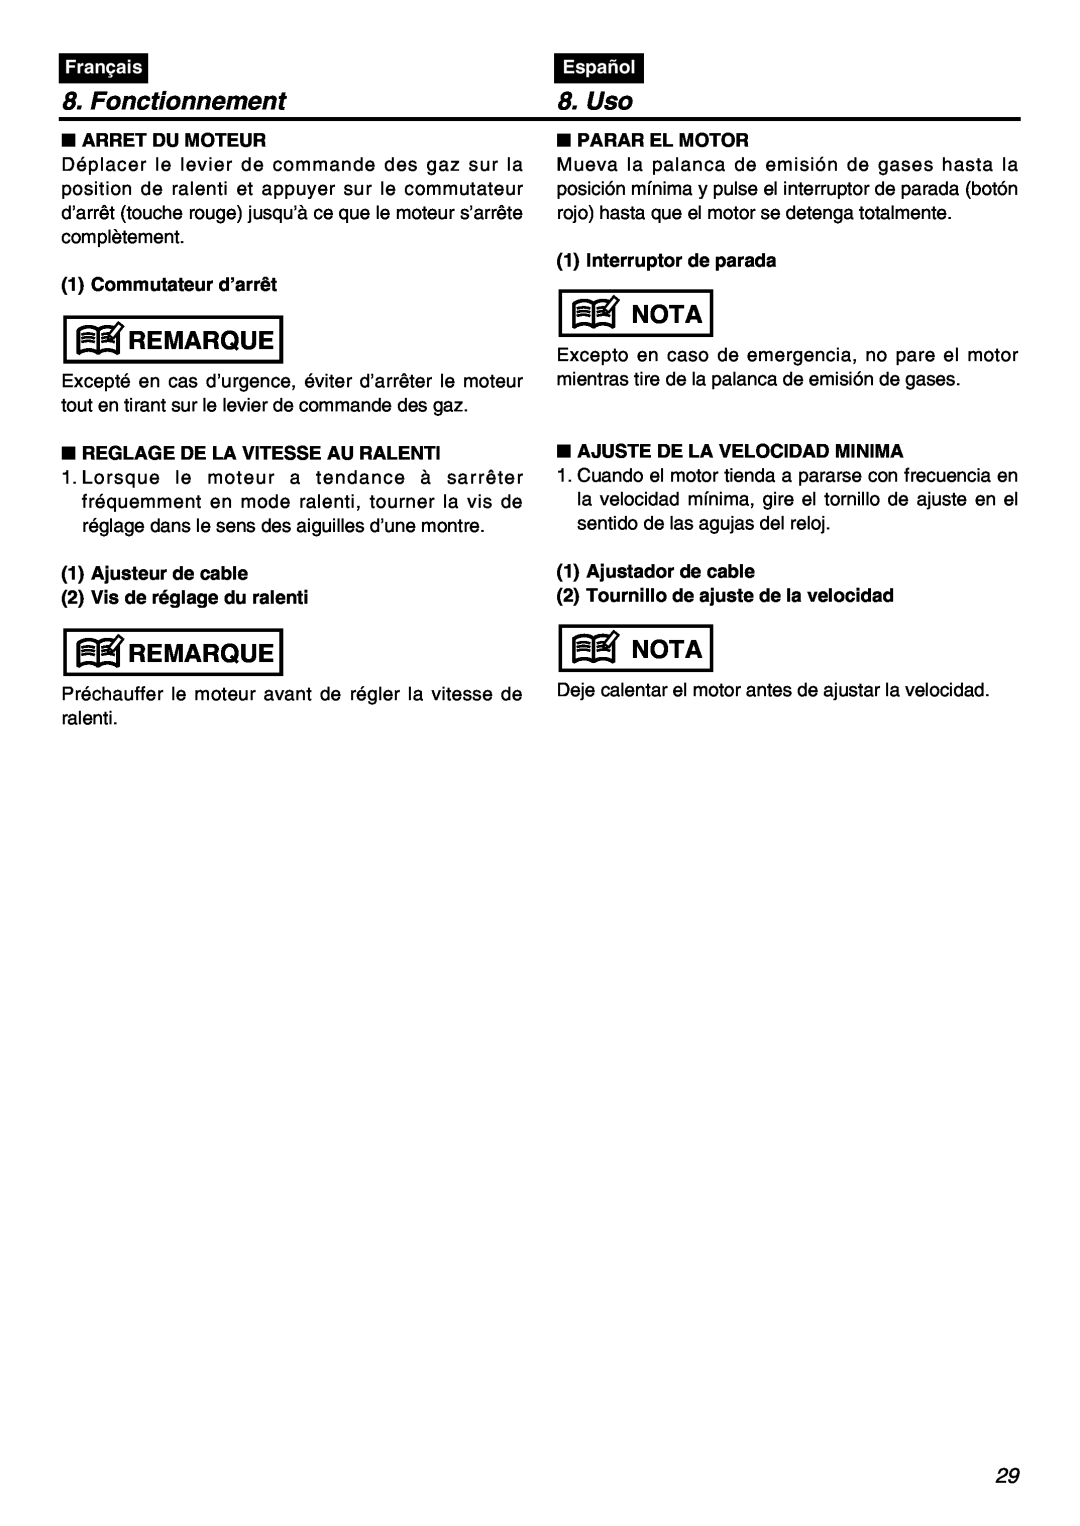 RedMax HBZ2601 manual Fonctionnement, Uso, Remarque, Nota, Français, Español, Arret Du Moteur, Commutateur d’arrêt 